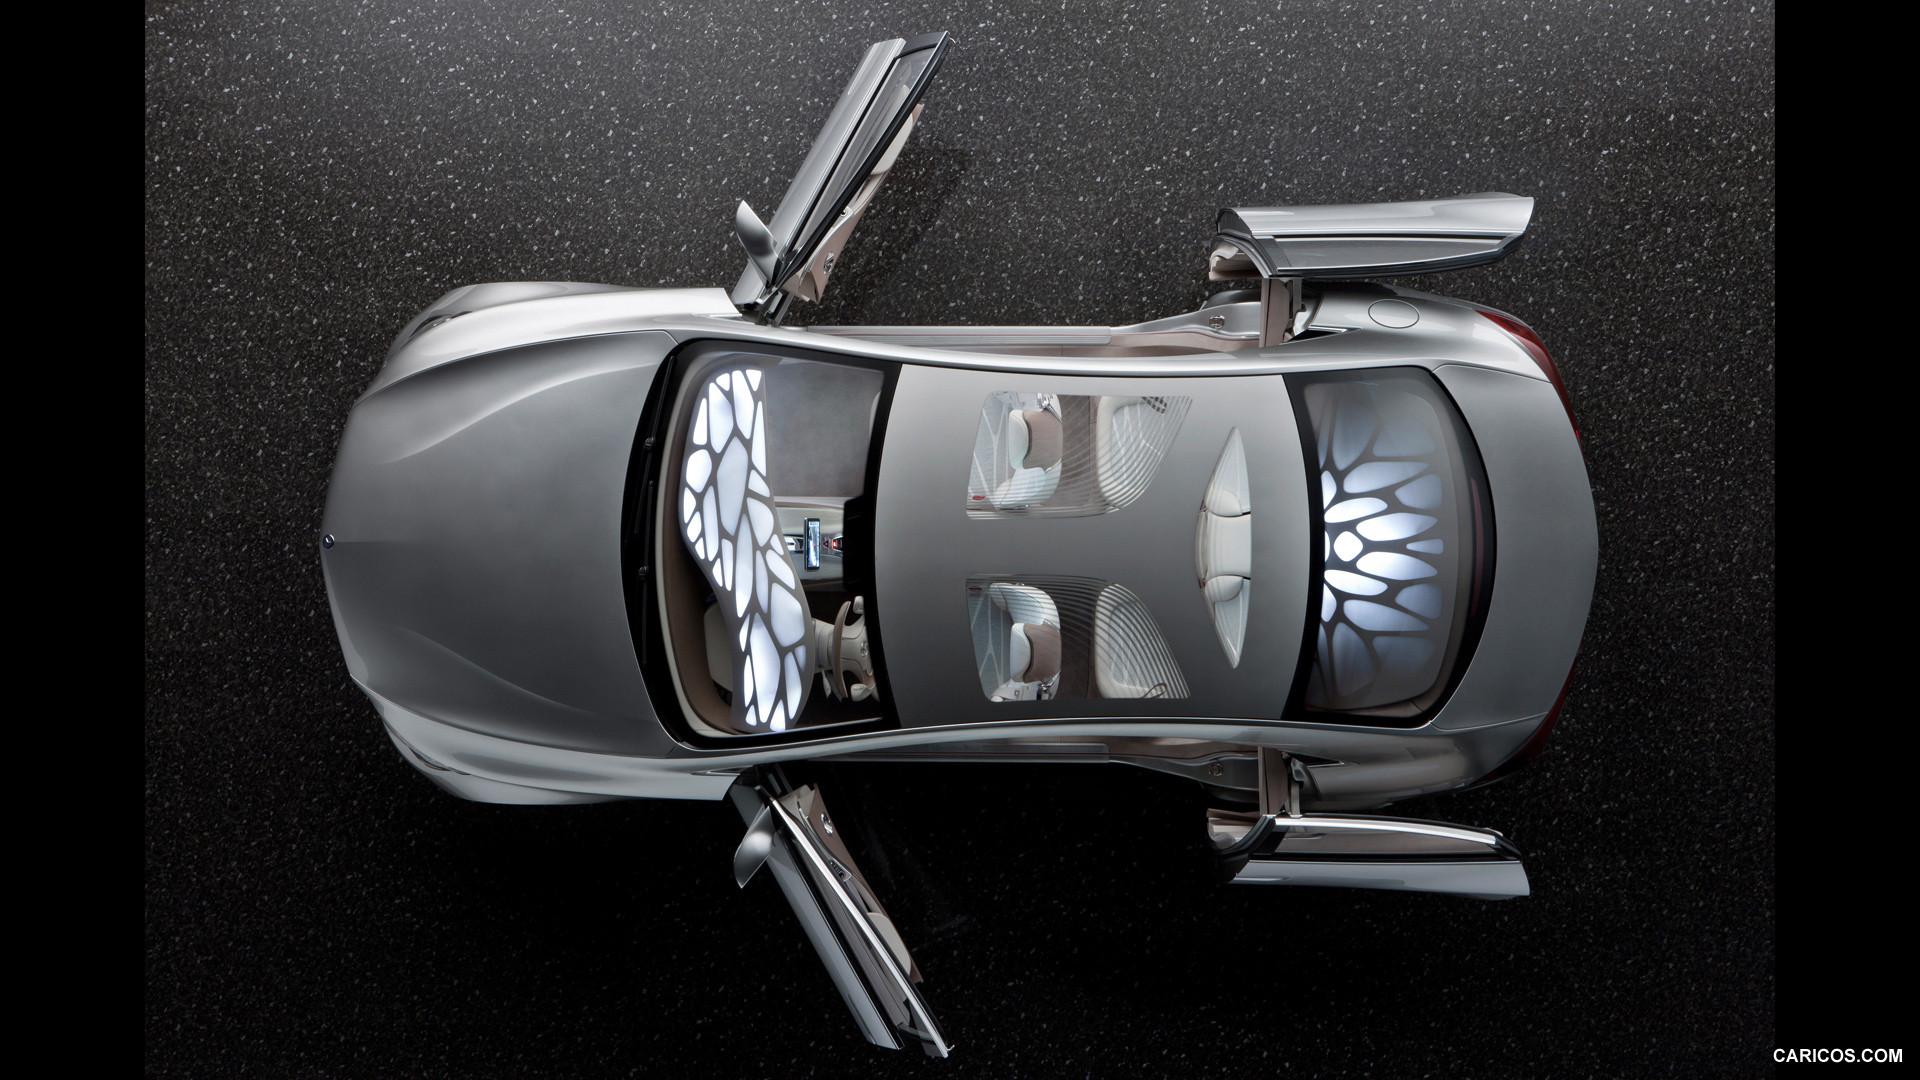 Mercedes-Benz F800 Style Concept (2010) - Doors Open - Top, #70 of 120